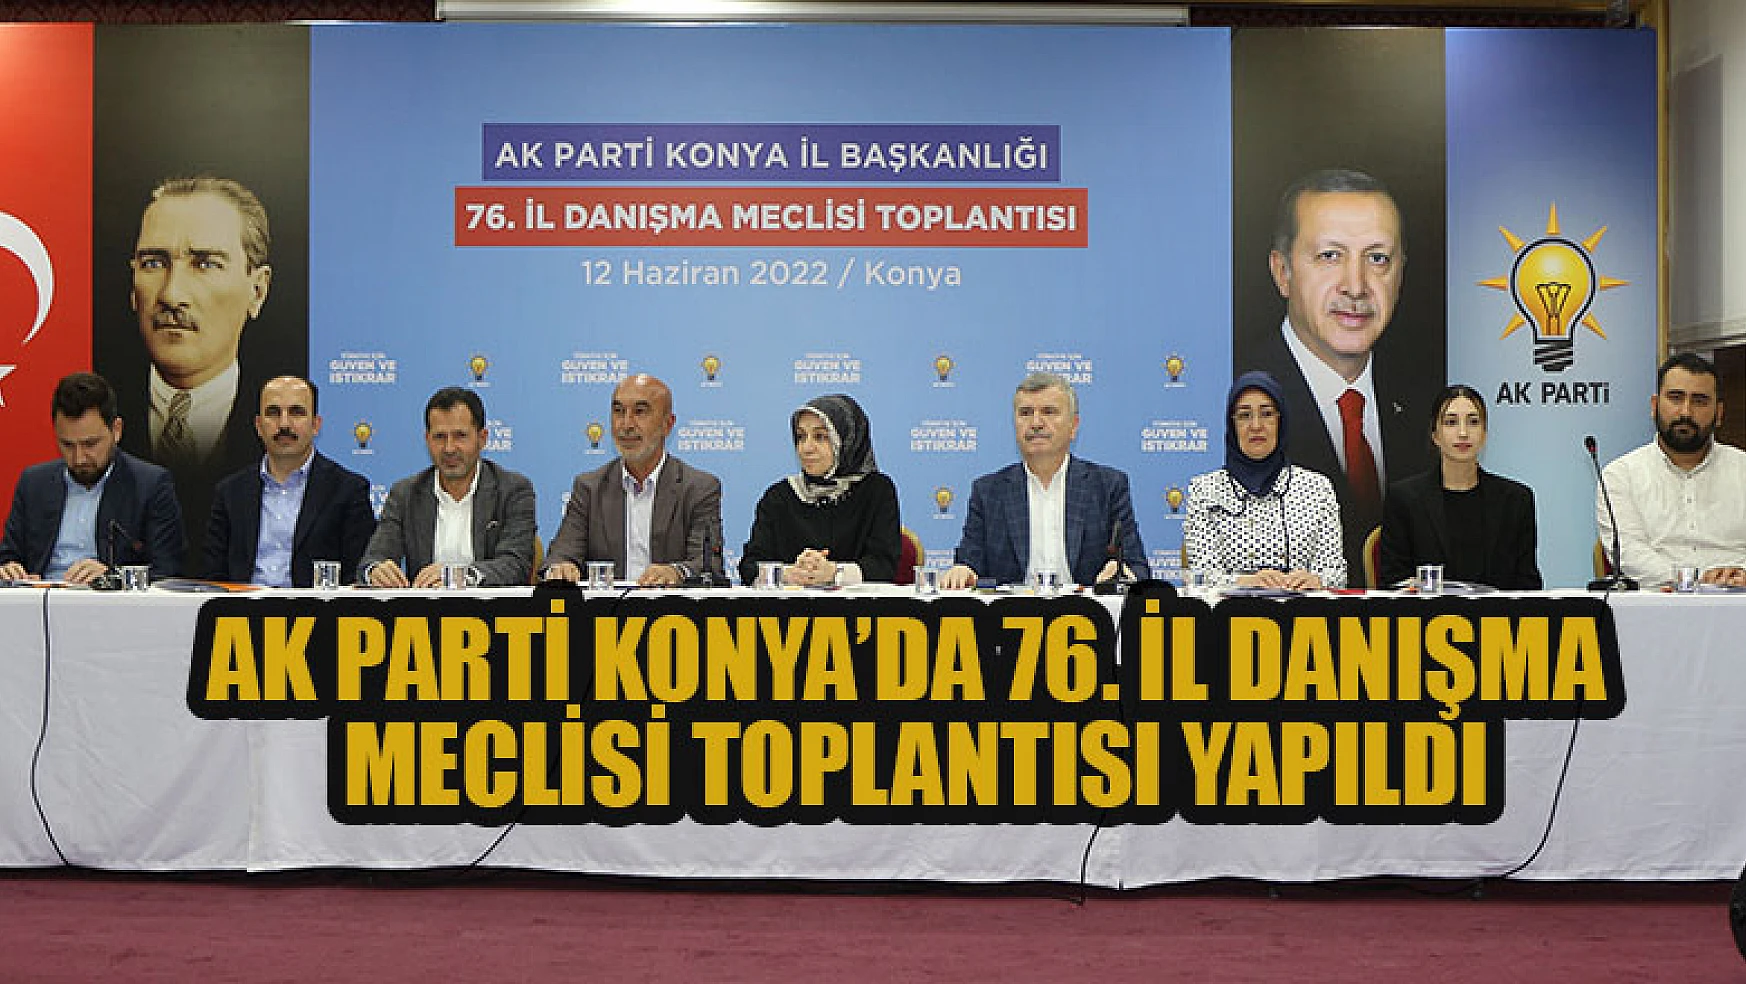 AK Parti Konya'da 76. İl Danışma Meclisi Toplantısı yapıldı